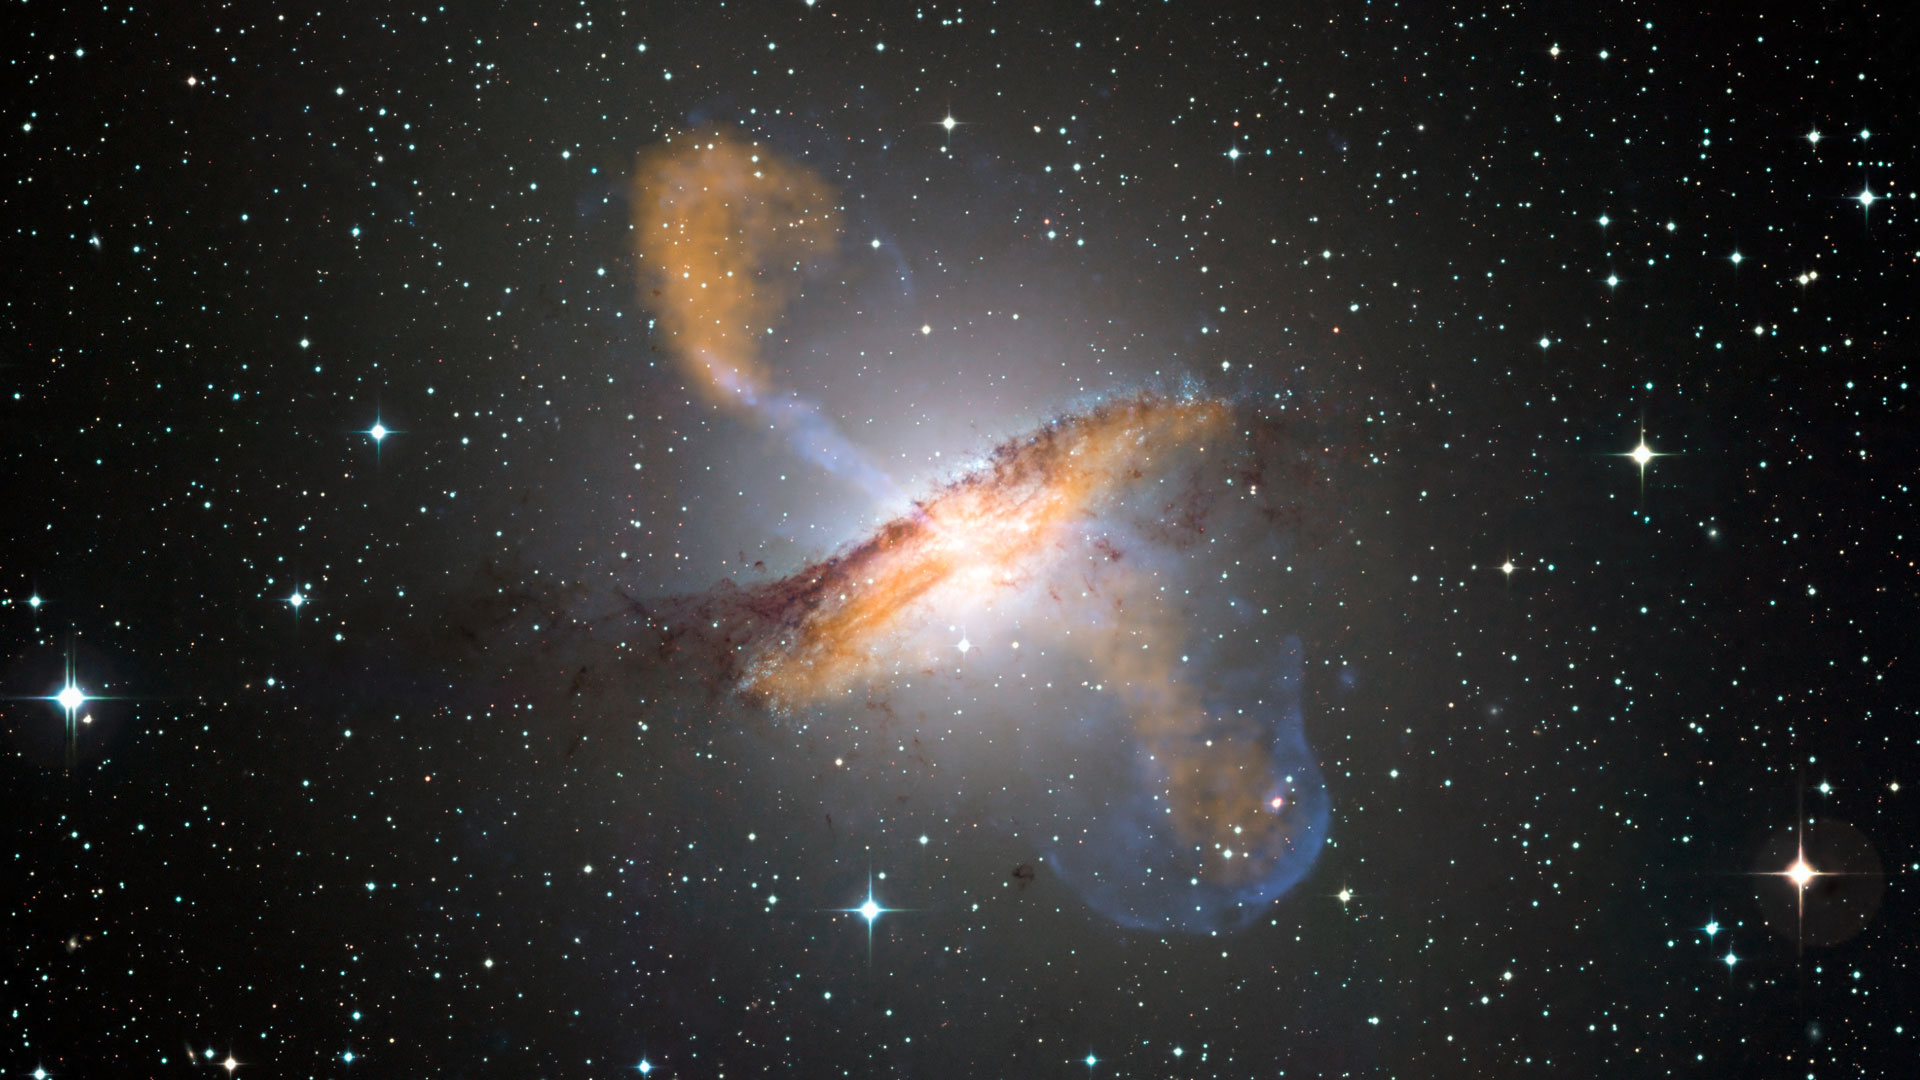 Lõi tối của thiên hà vô tuyến gần nhất được xác định bởi Kính viễn vọng Chân trời Sự kiện